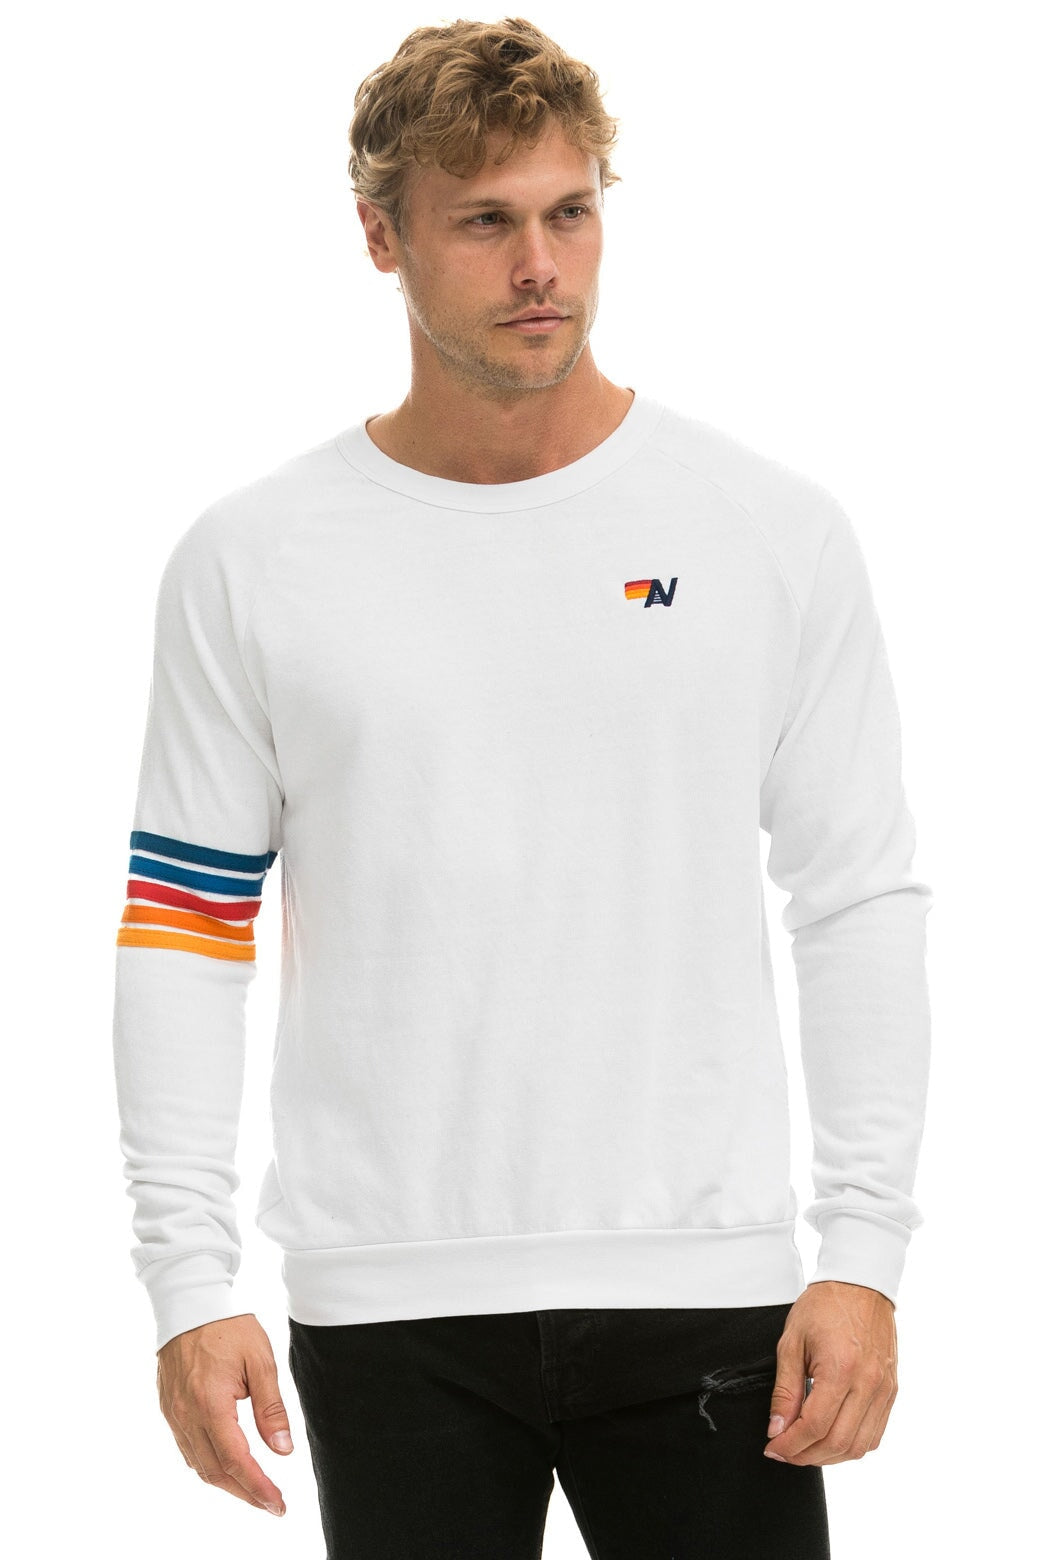 RUGBY STITCH SWEATSHIRT - WHITE 2 Sweatshirt Aviator Nation 